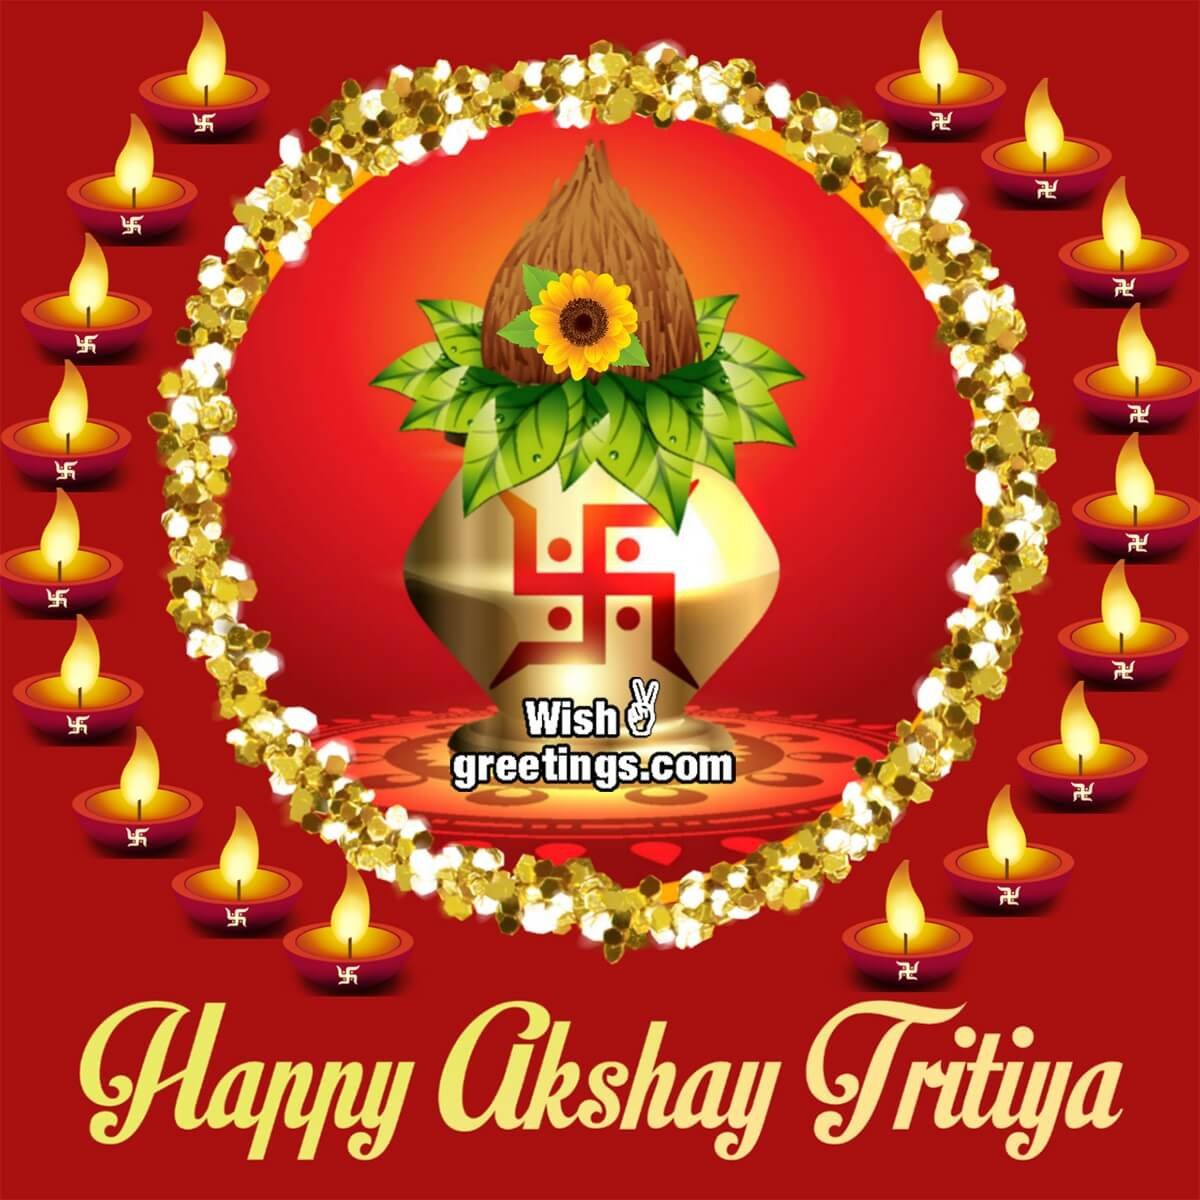 Happy Akshay Tritiya Dp Image